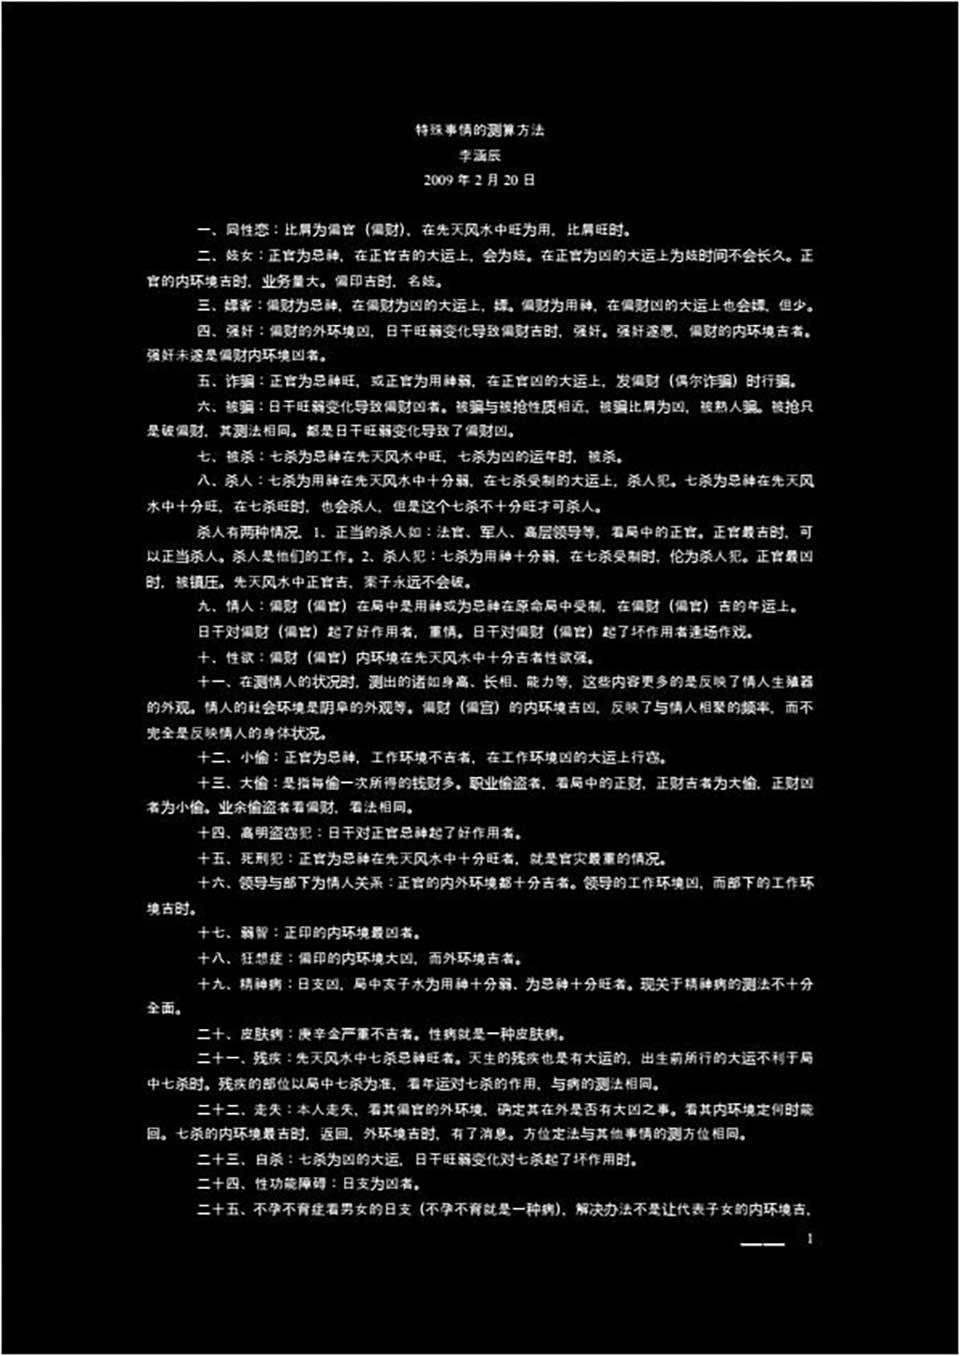 李函辰-20090220特殊事情的測算方法（一校）2頁.pdf